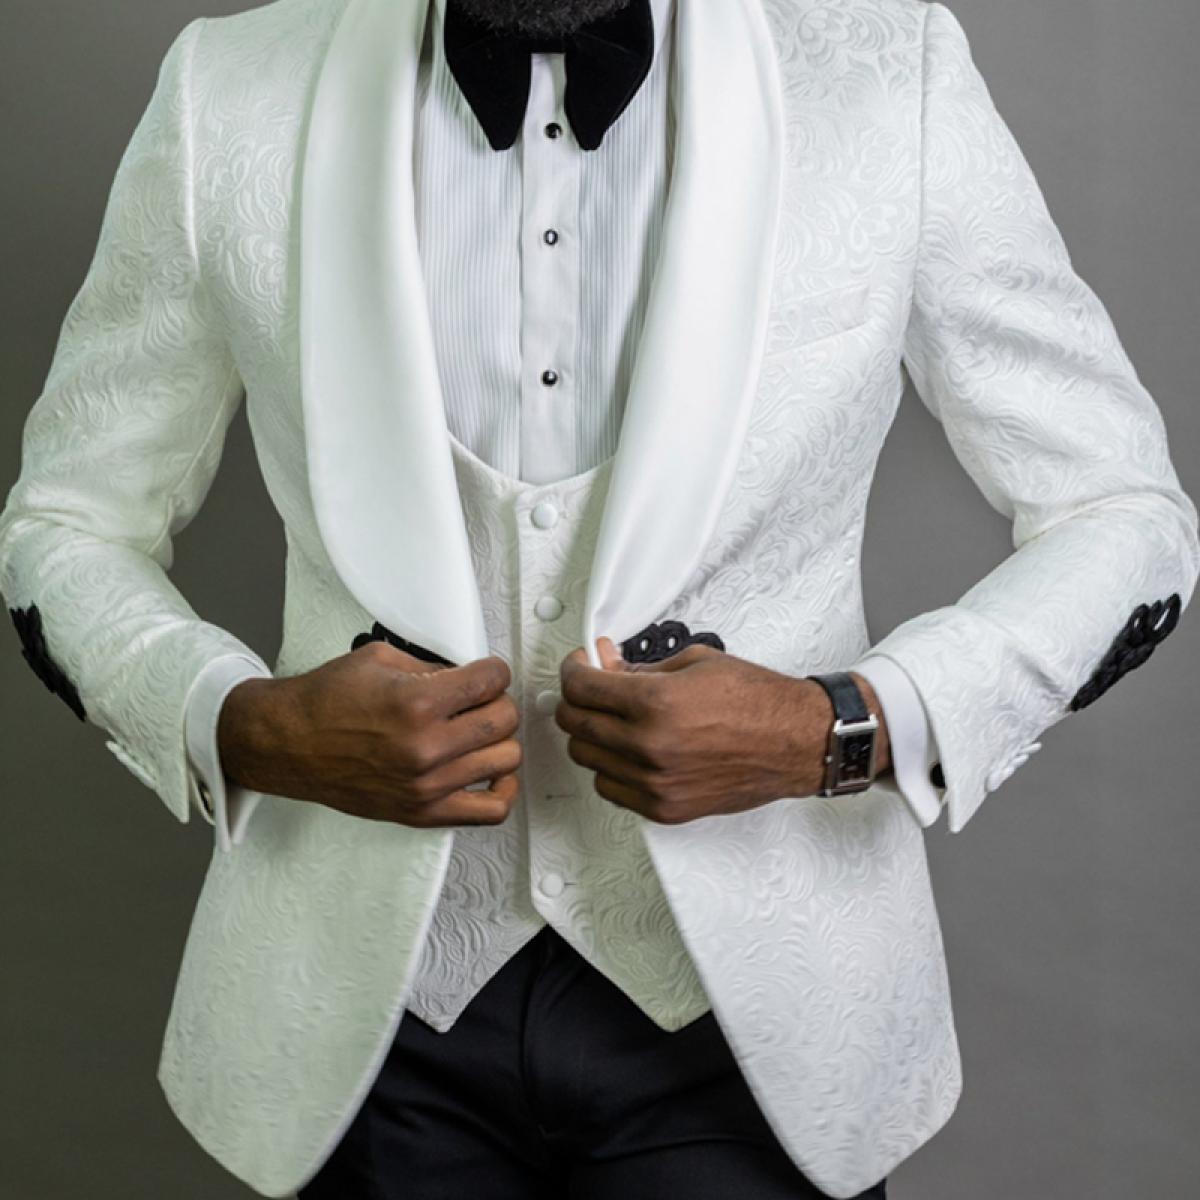 Women's Bespoke Black Suit | Pantsuits for women, High collar shirts, White  shirts women